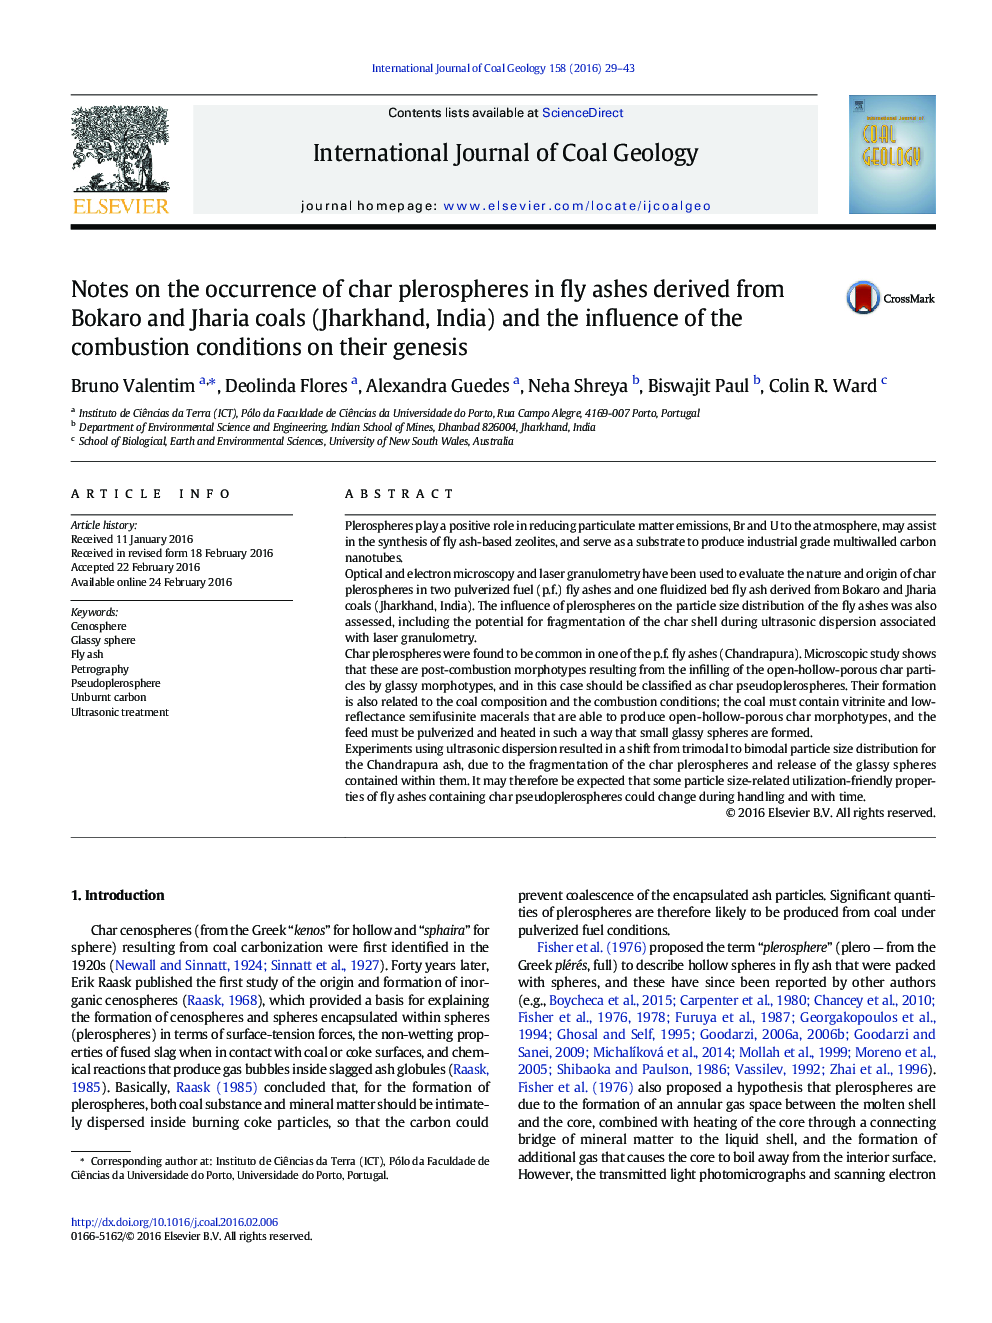 نکاتی در مورد وقوع plerospheres کاراکتر در خاکستر پرواز به دست آمده از بوکارو و Jharia زغال سنگ (جارکند، هند) و تأثیر شرایط سوختن در پیدایش